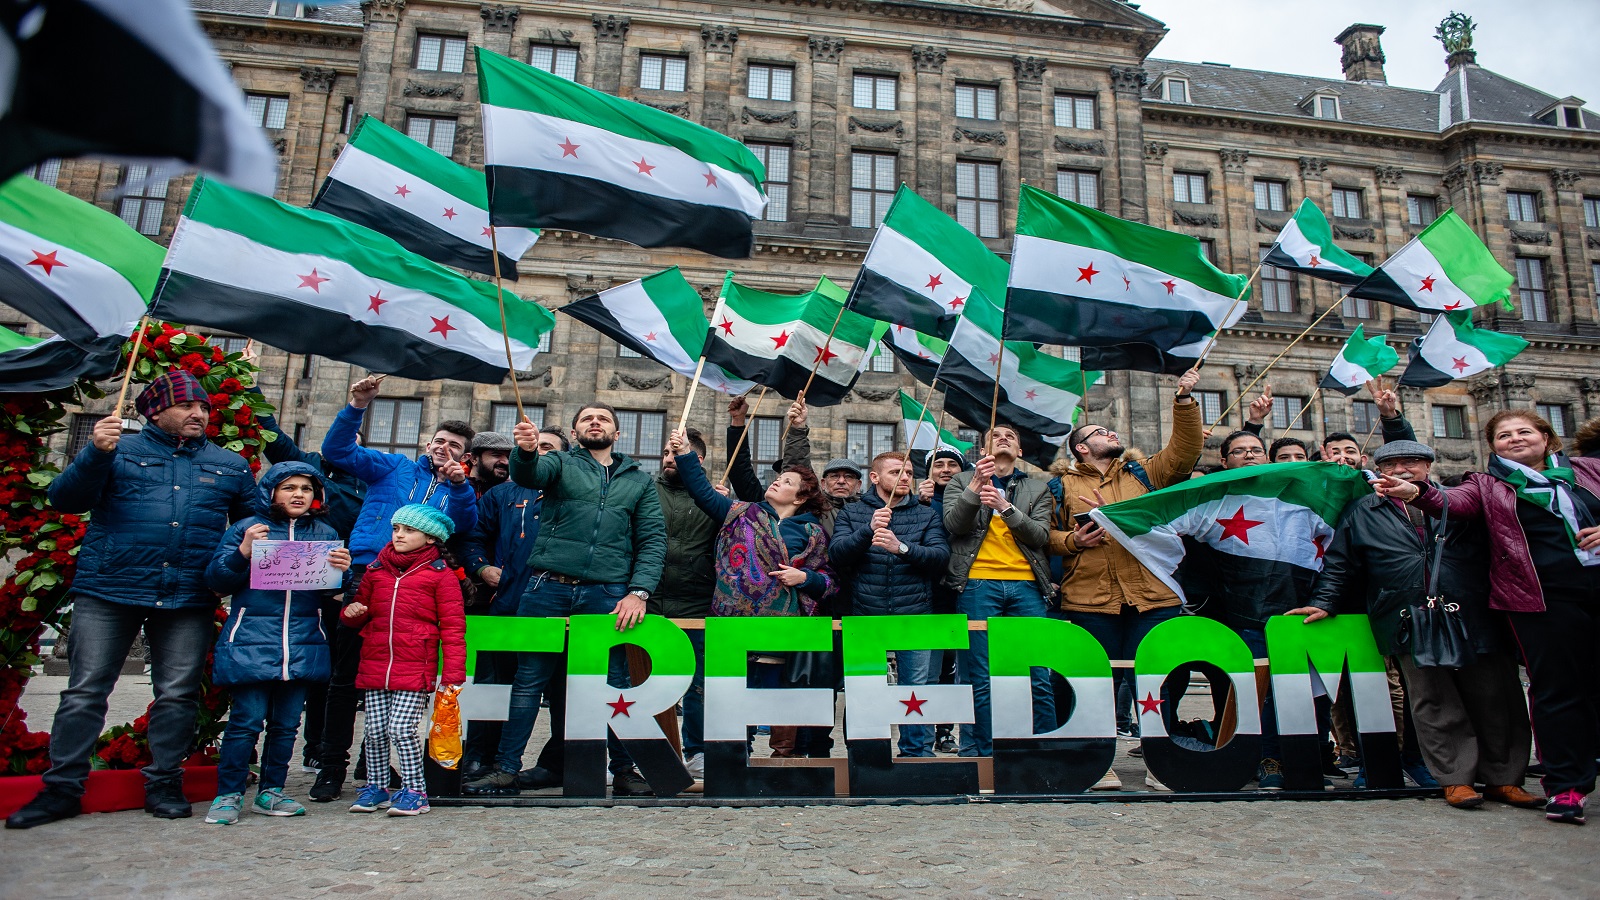 البحث عن الحرية "لسّا موجود" في بقايا سوريا